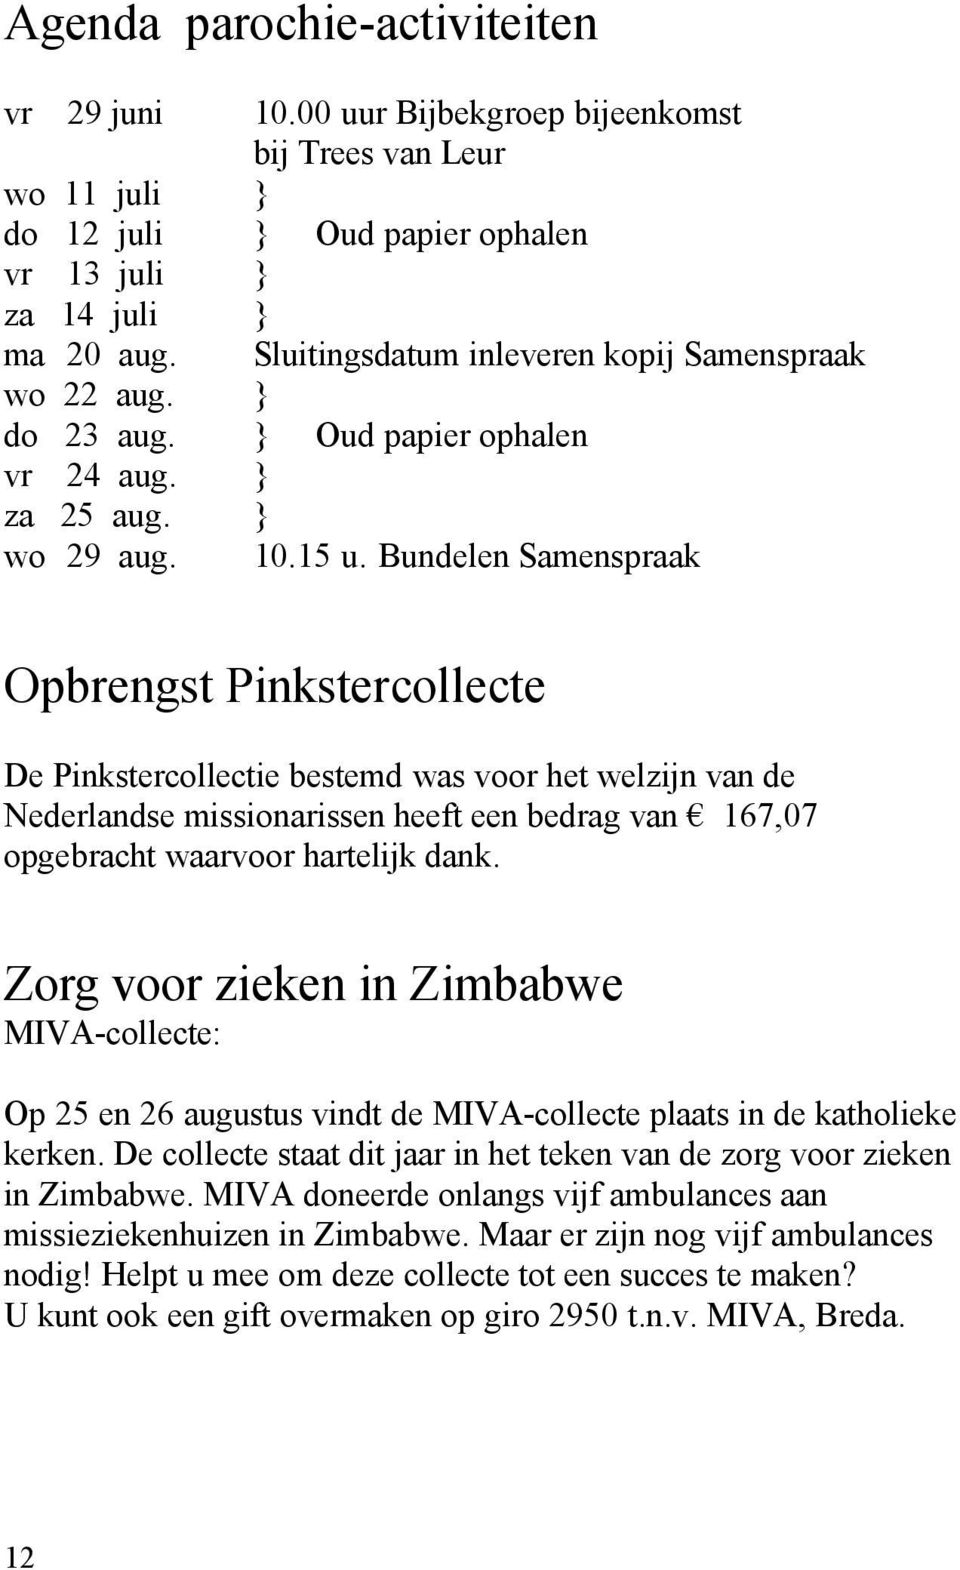 Bundelen Samenspraak Opbrengst Pinkstercollecte De Pinkstercollectie bestemd was voor het welzijn van de Nederlandse missionarissen heeft een bedrag van 167,07 opgebracht waarvoor hartelijk dank.